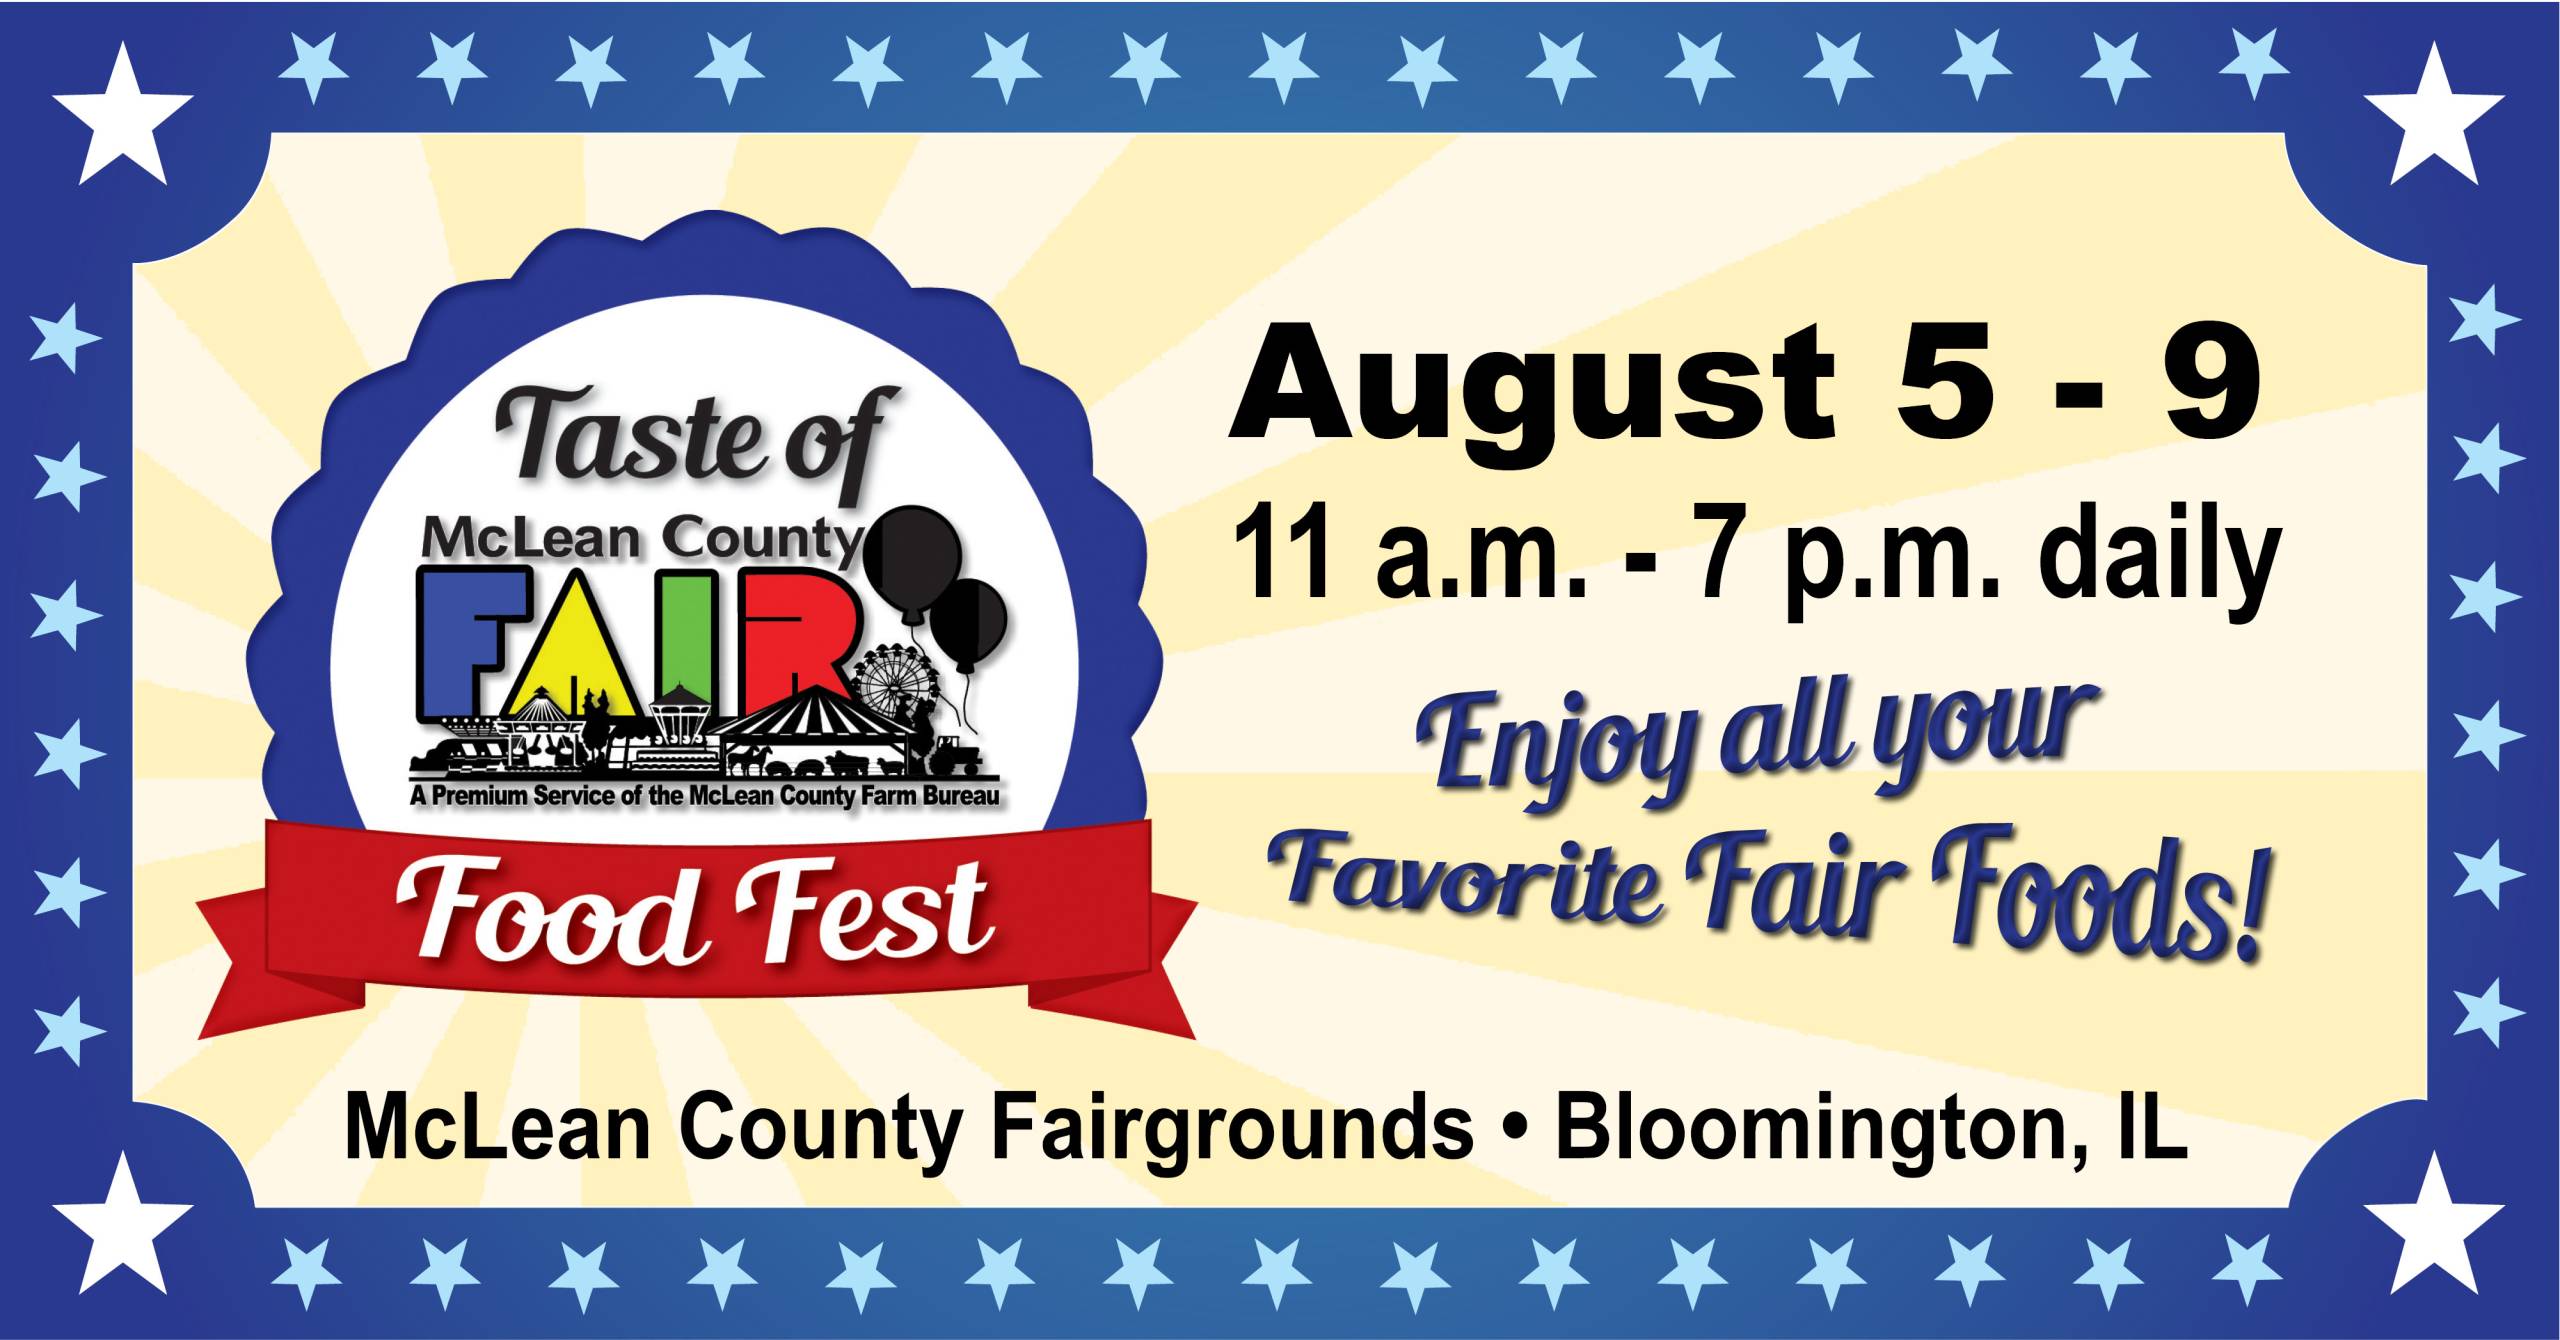 Taste of McLean County Fair Food Fest